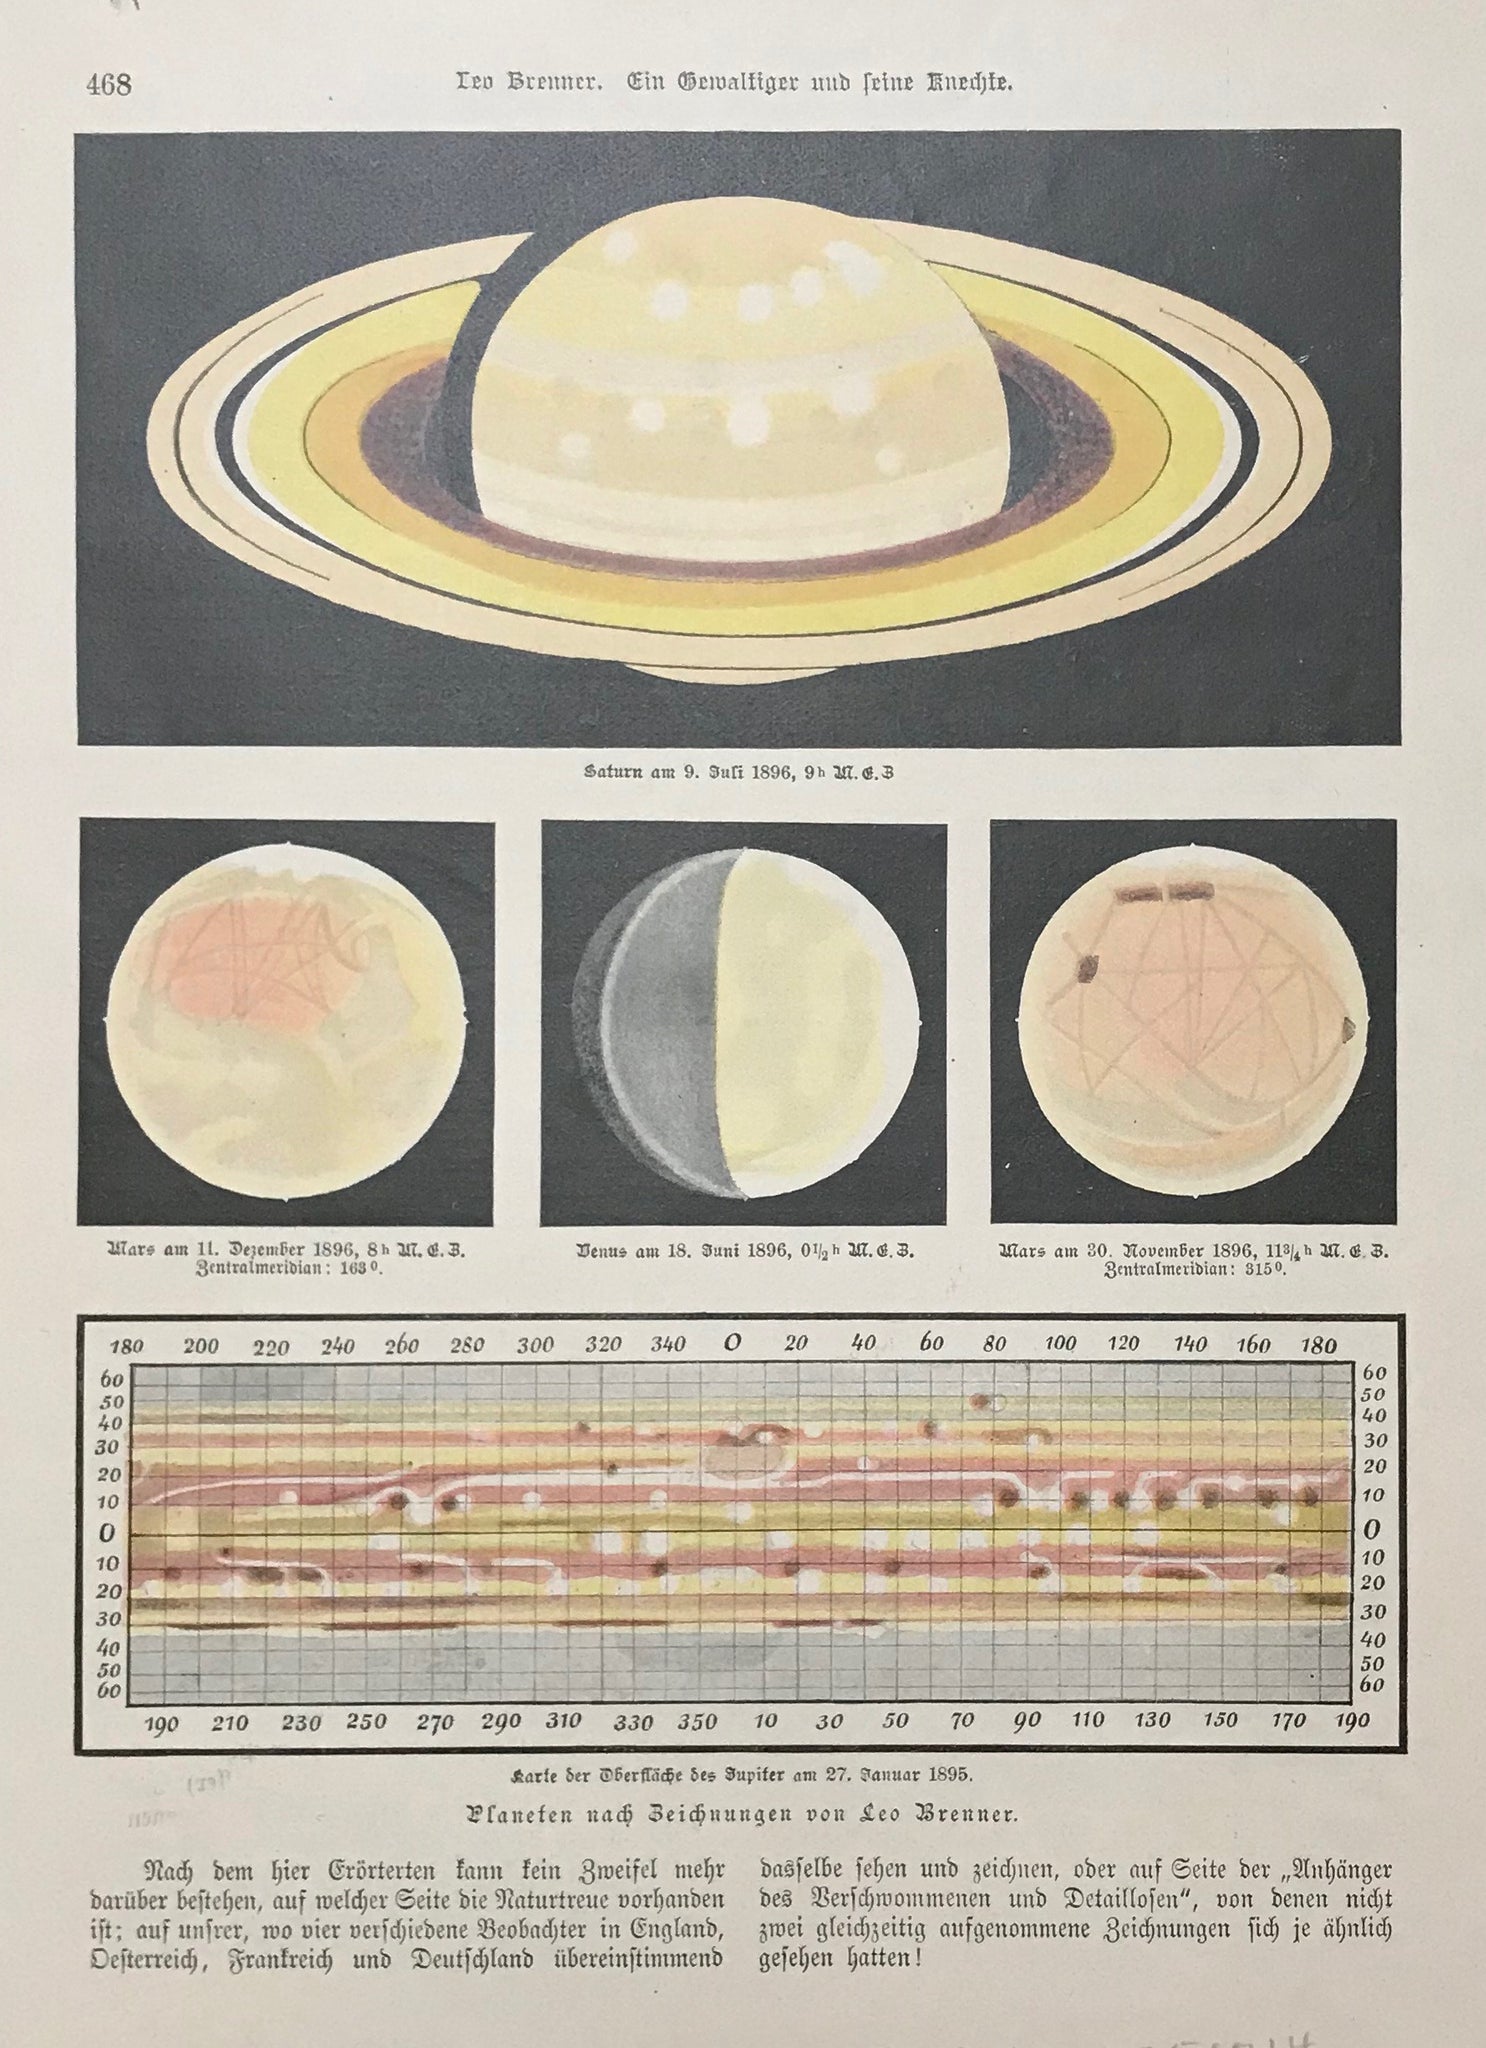 Upper image: "Saturn am 9 Juli 1896" Lower diagram: "Karte der Oberflache des Jupiter am 27. Januar 1896"